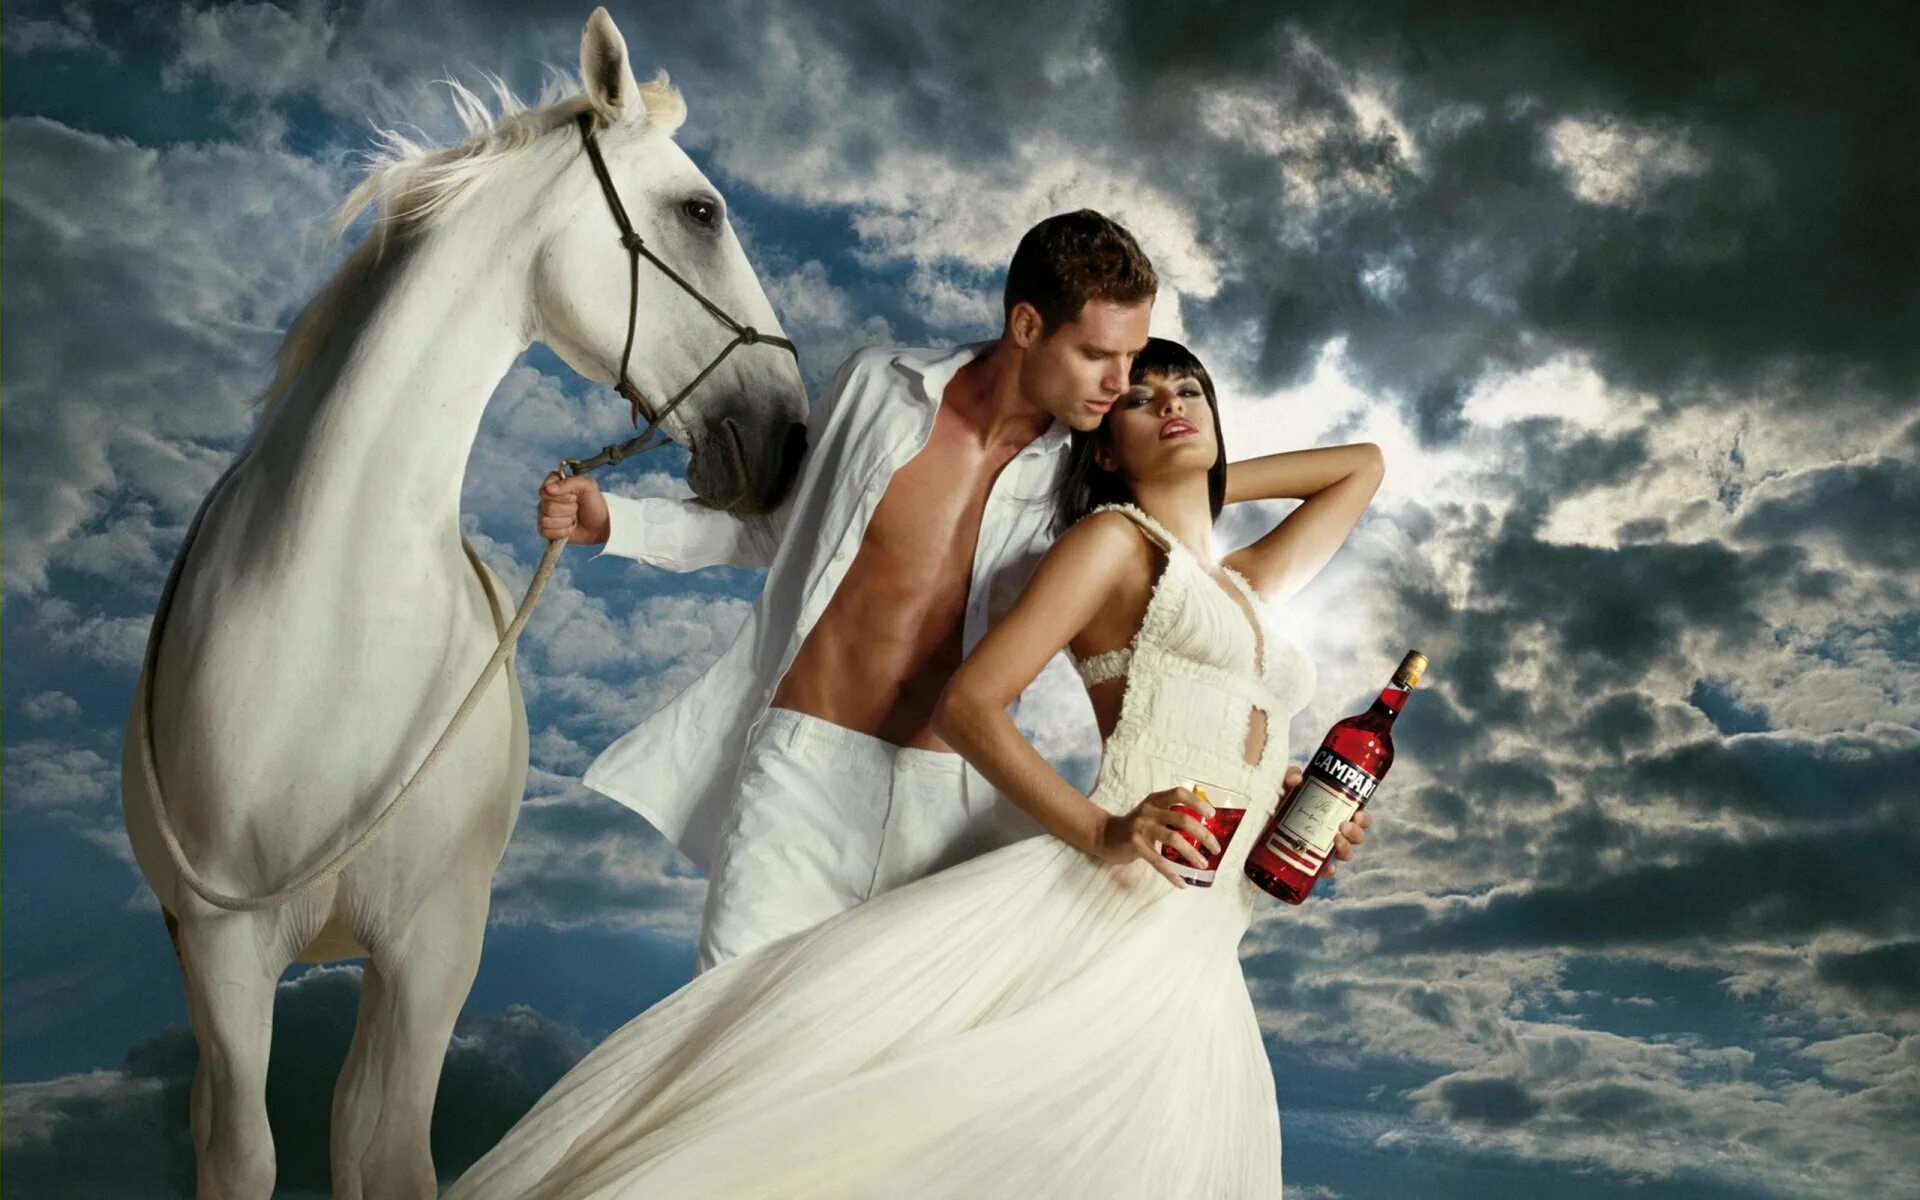 Конь мужик баб. Фотосессия с лошадьми. Мужчина и женщина на коне. Принц на белом коне.